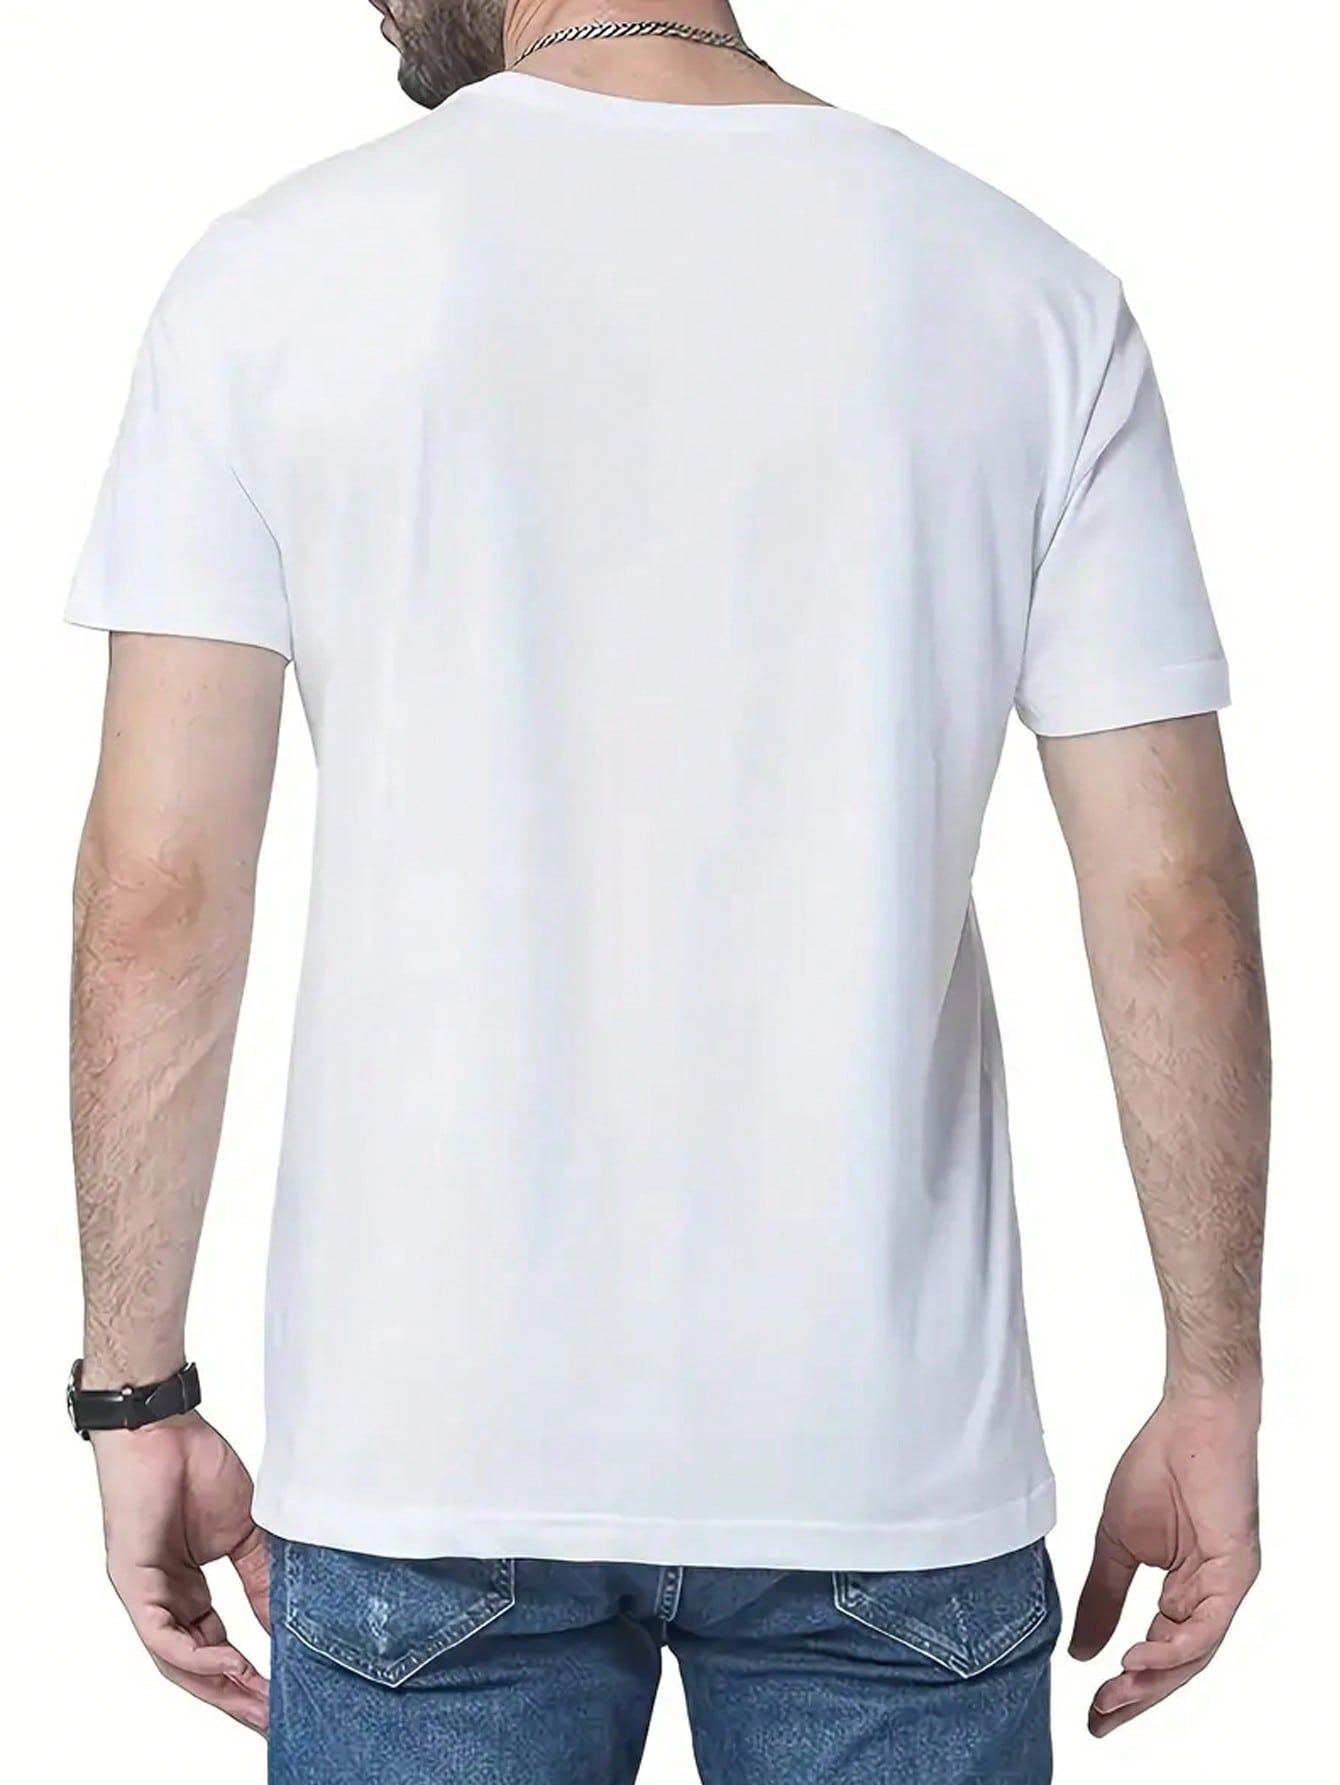 Мужская футболка с коротким рукавом, круглым вырезом и принтом со слоганом, белый 2023 гоночная футболка aston martin гоночный топ фернандо алонсо толстовка с коротким рукавом и круглым вырезом мужская футболка